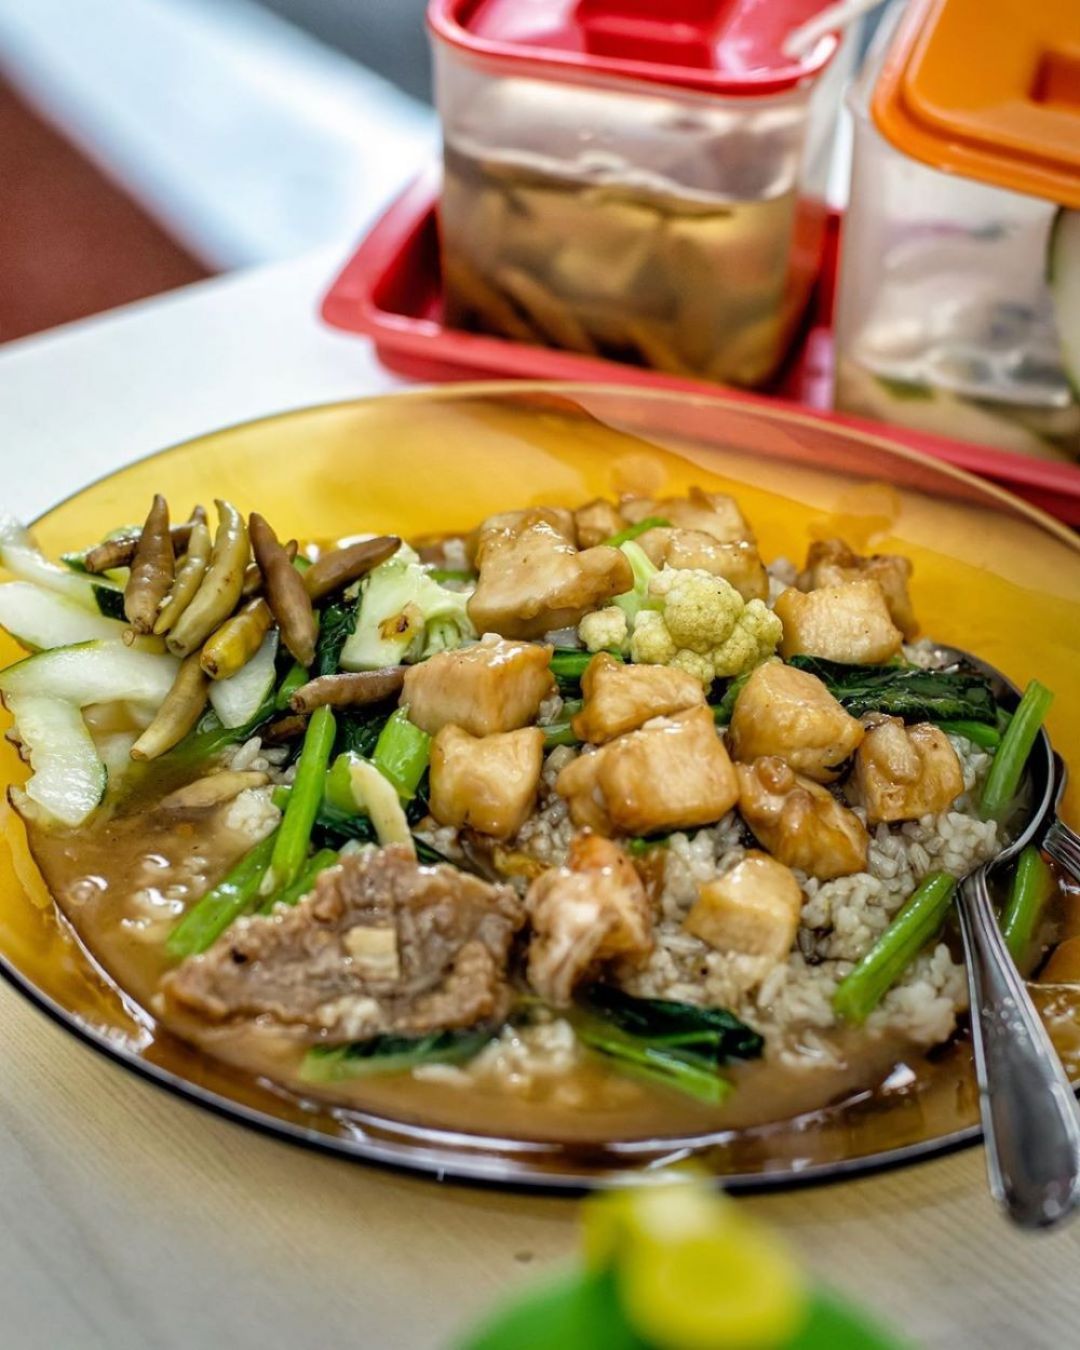 7 Rekomendasi Restoran Chinese Food di Surabaya Paling Favorit, Harus Coba!-Image-7